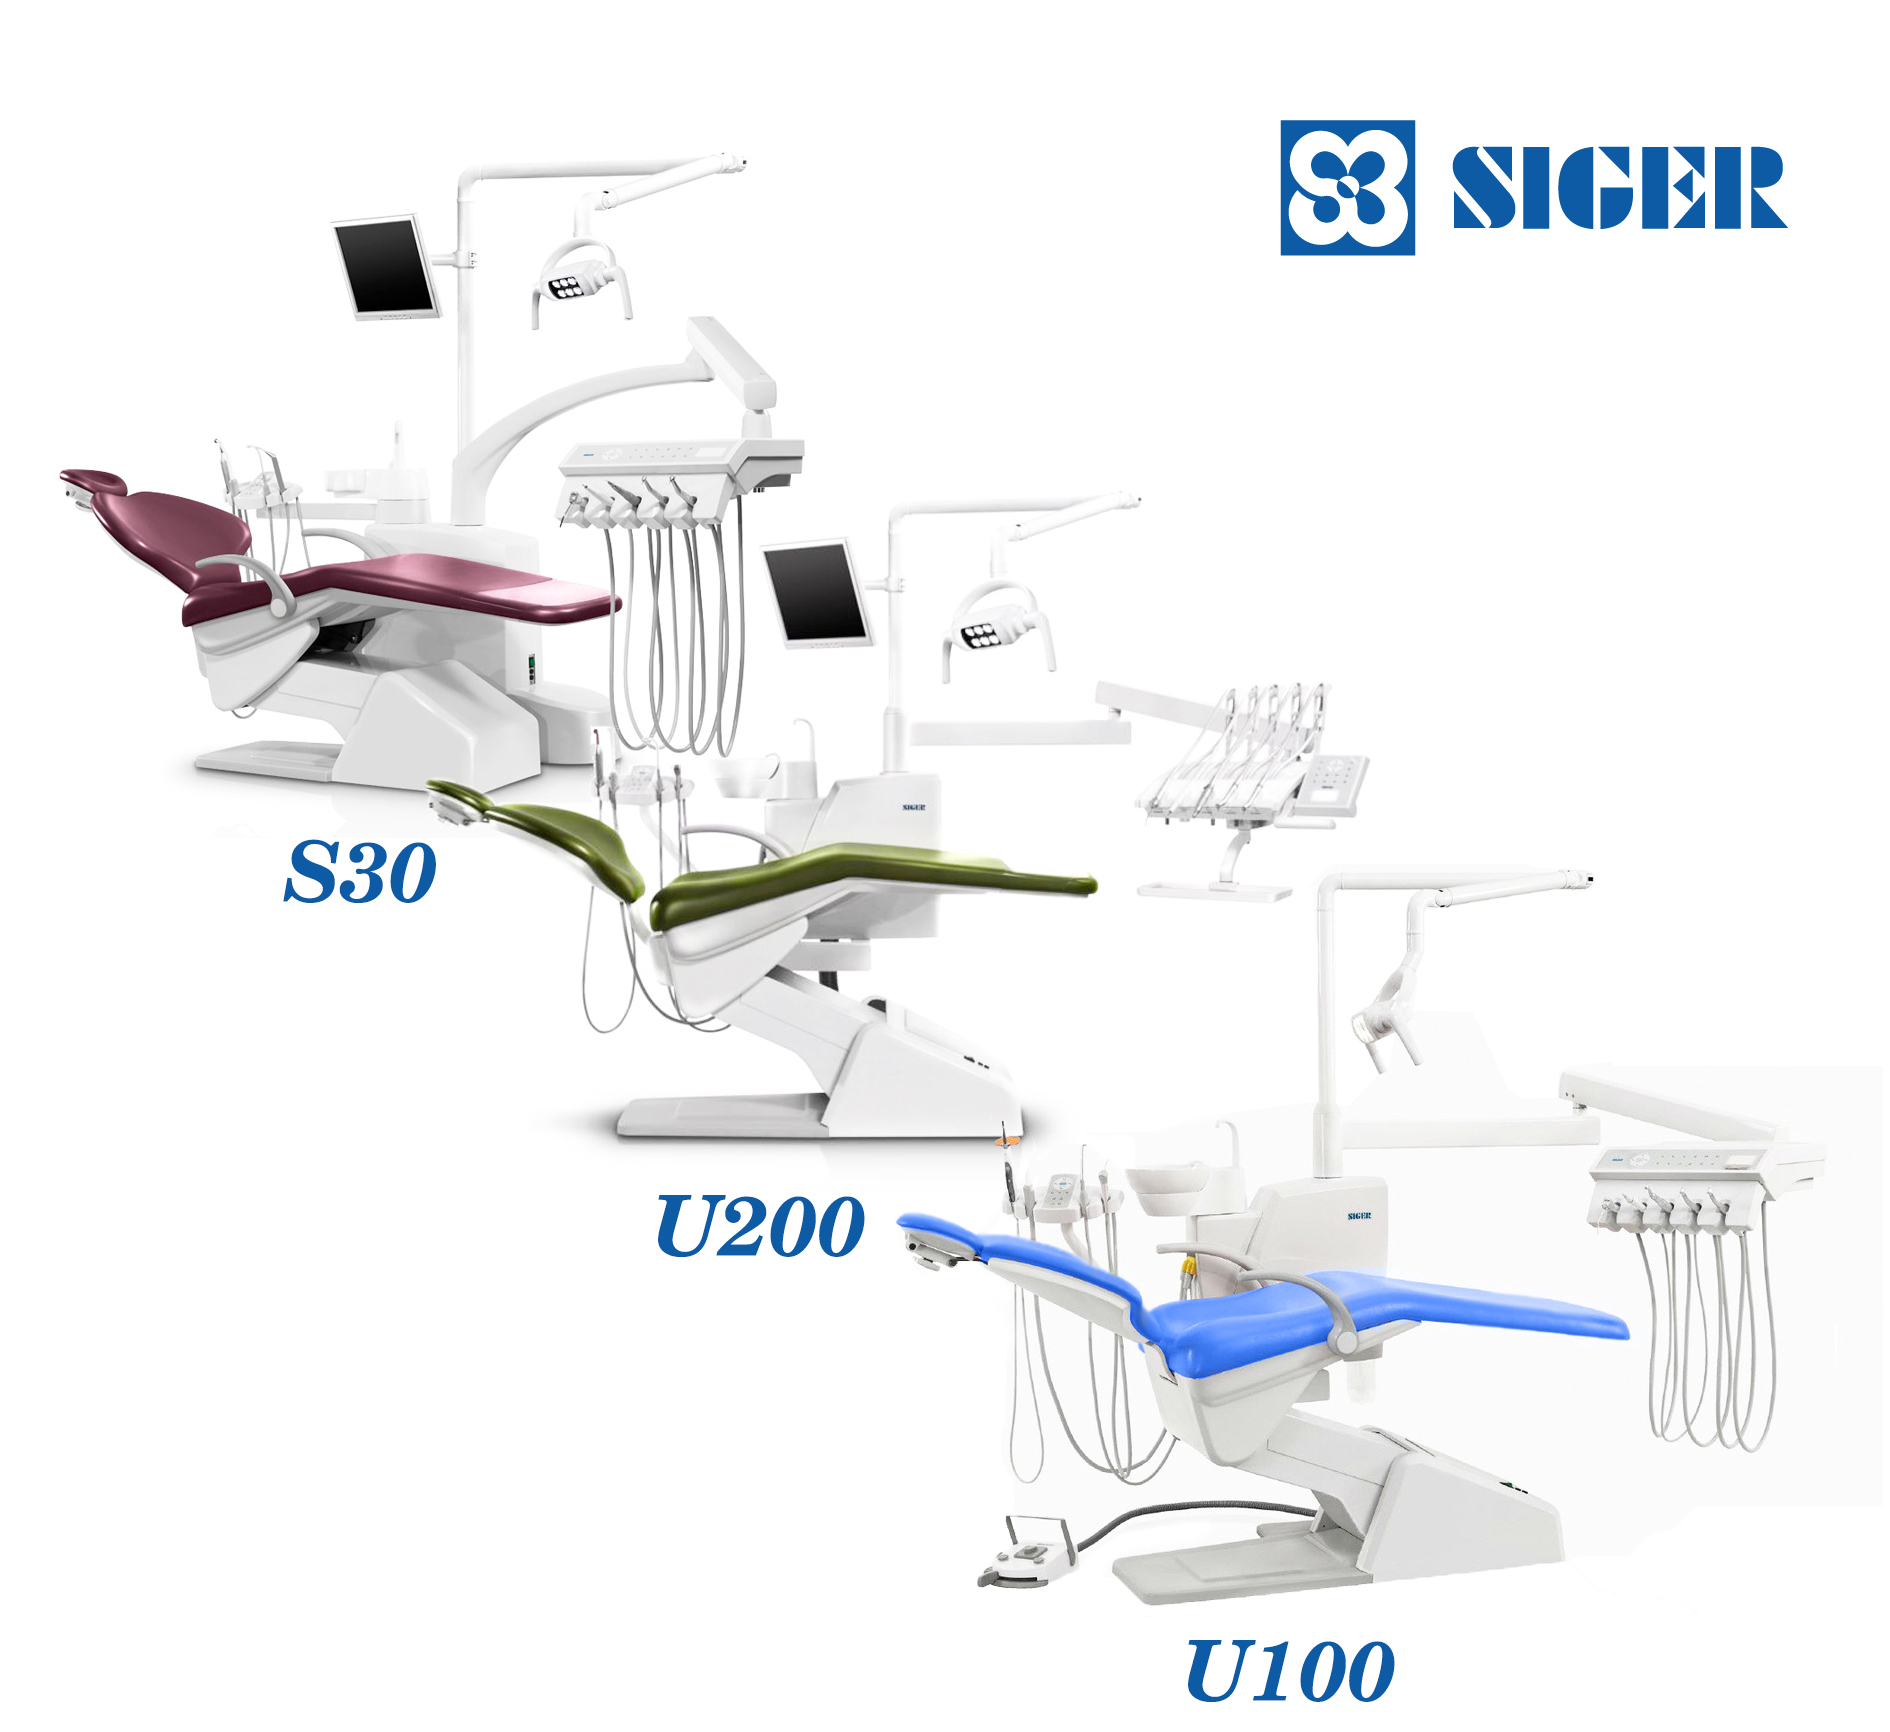 Стоматологические установки Siger - синоним надёжности и качества